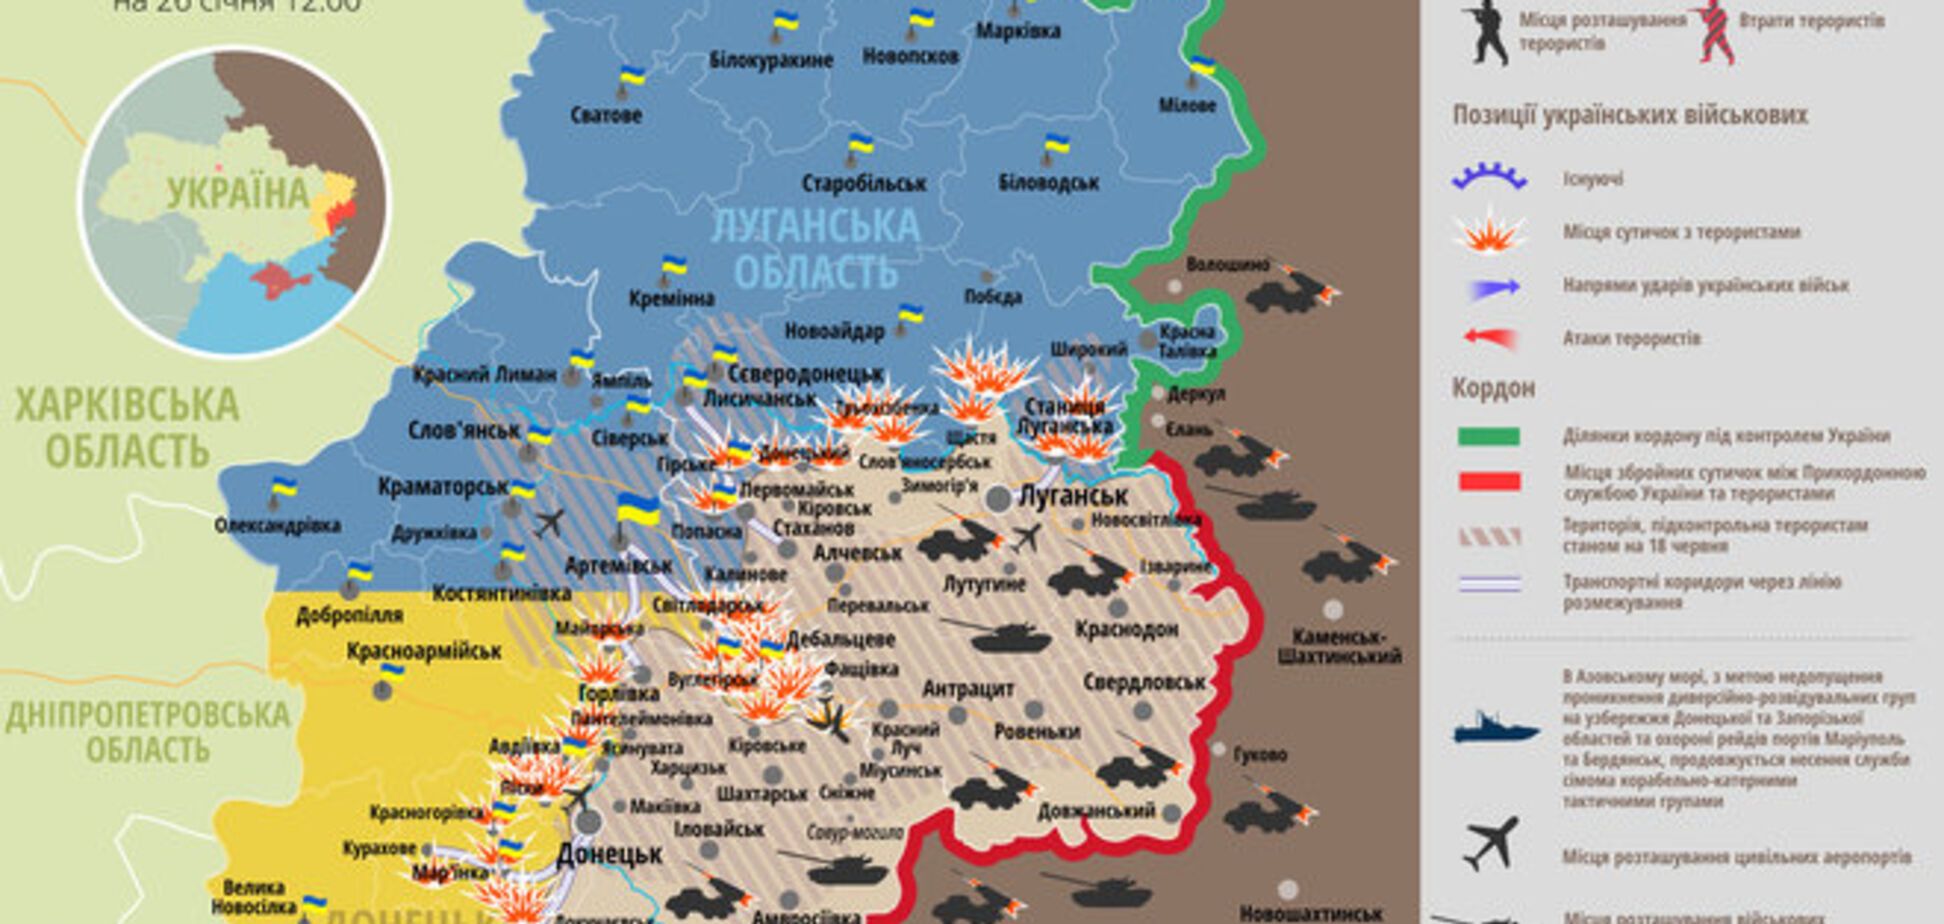 Терористи б'ють по всіх напрямках, Росія активізує авіацію поблизу кордонів: мапа АТО